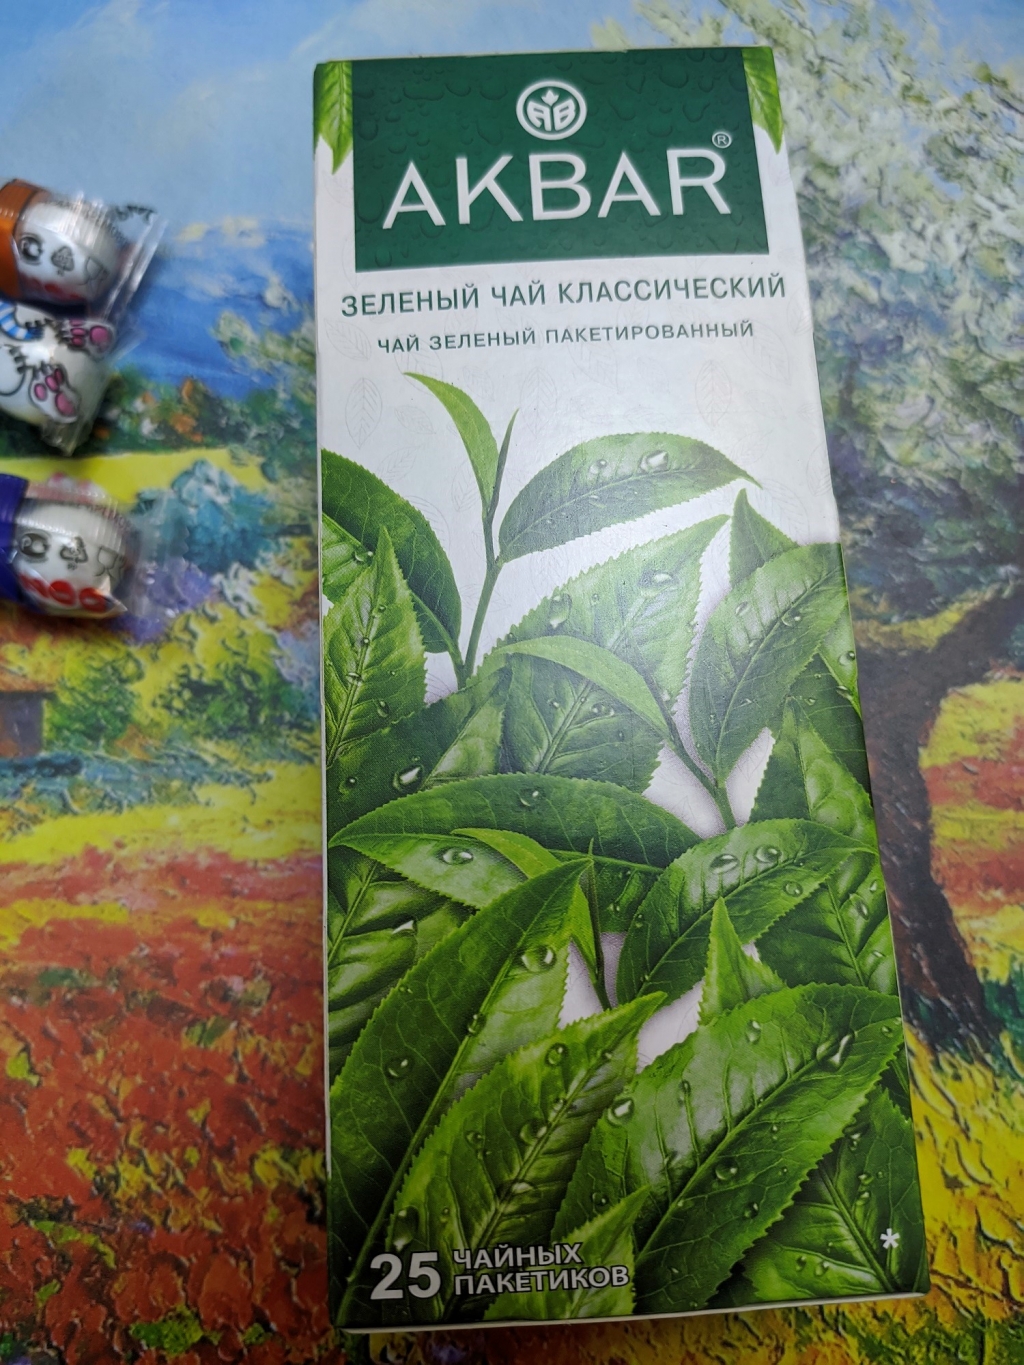 Чай зеленый Akbar "Классический", 25 пакетиков - Вкусный зеленый чай от Акбар